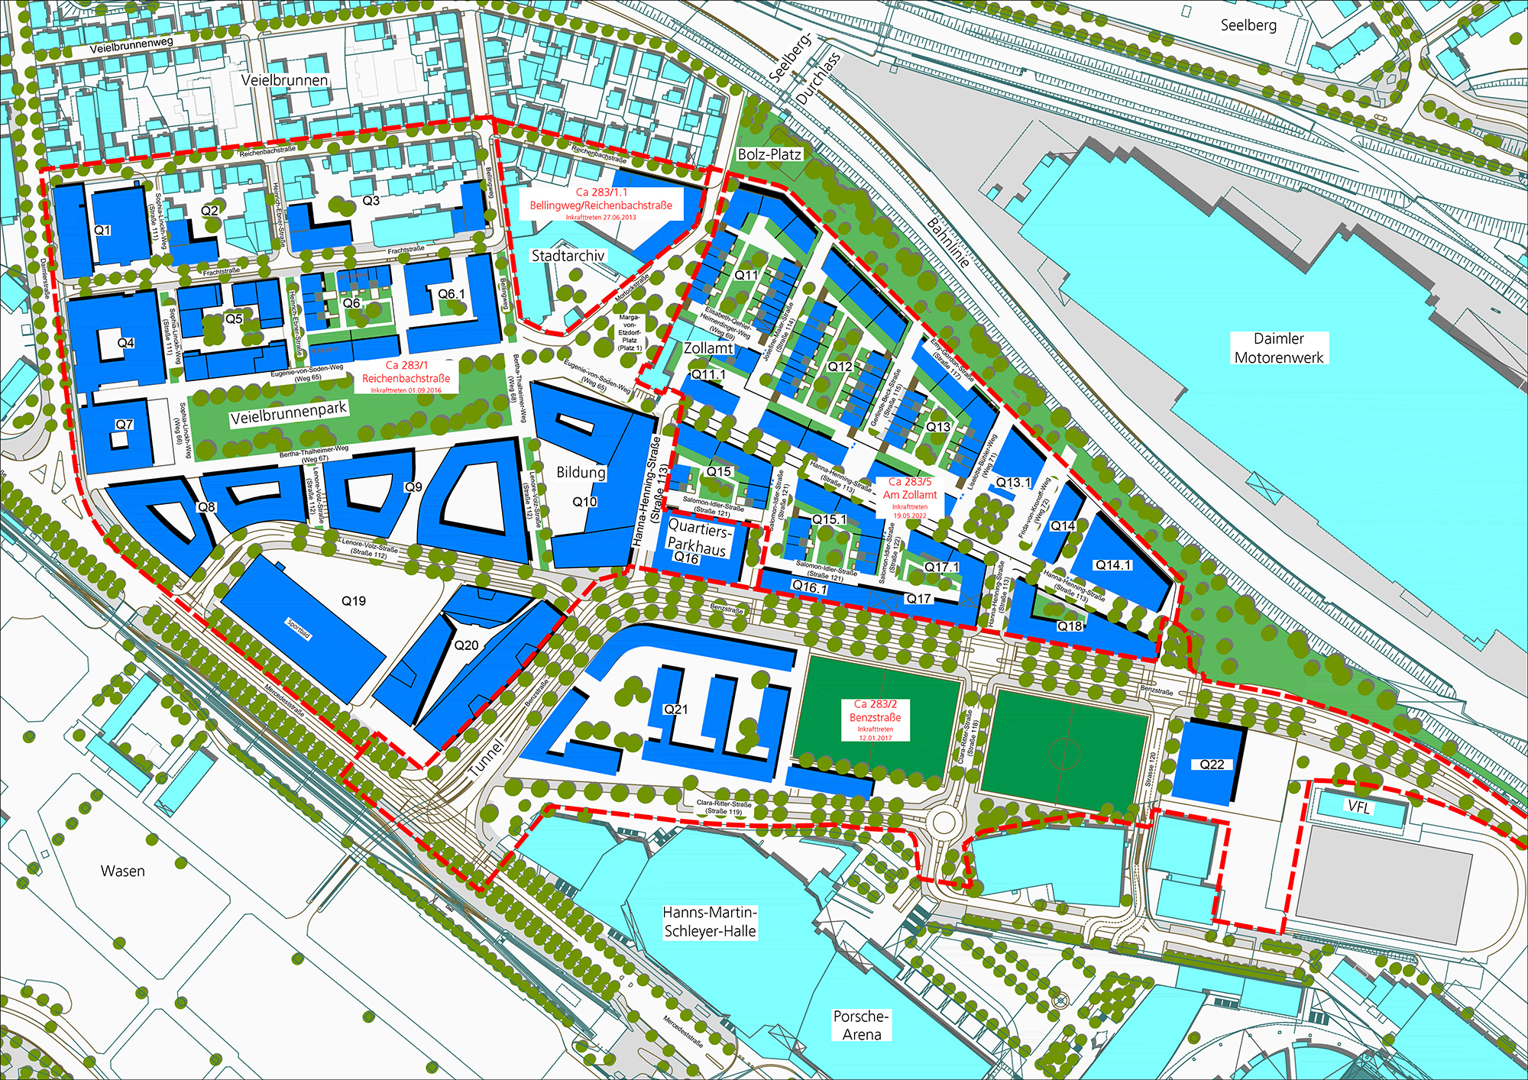 Der Rahmenplan zeigt, wo welche Gebäude und Maßnahmen auf dem Areal geplant sind.